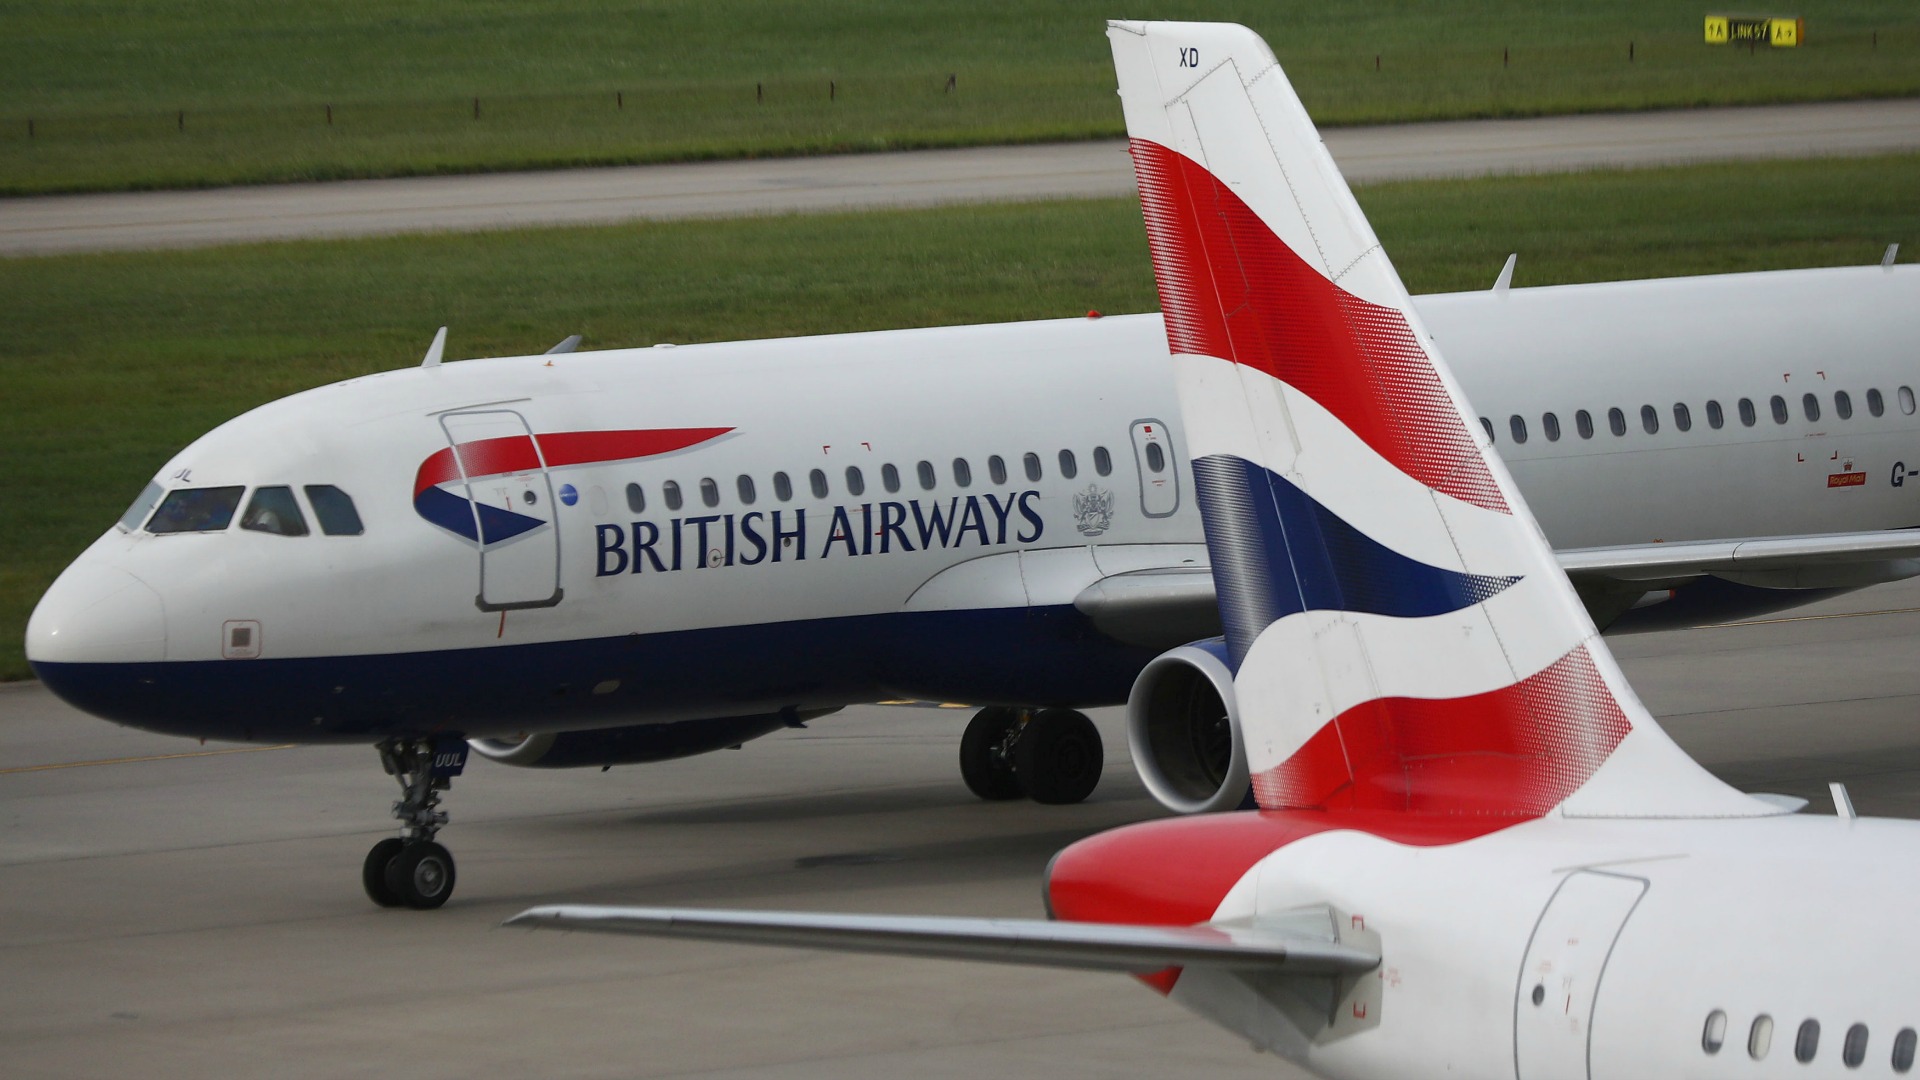 British Airways estima unas pérdidas superiores a 150 millones de libras por el fallo informático